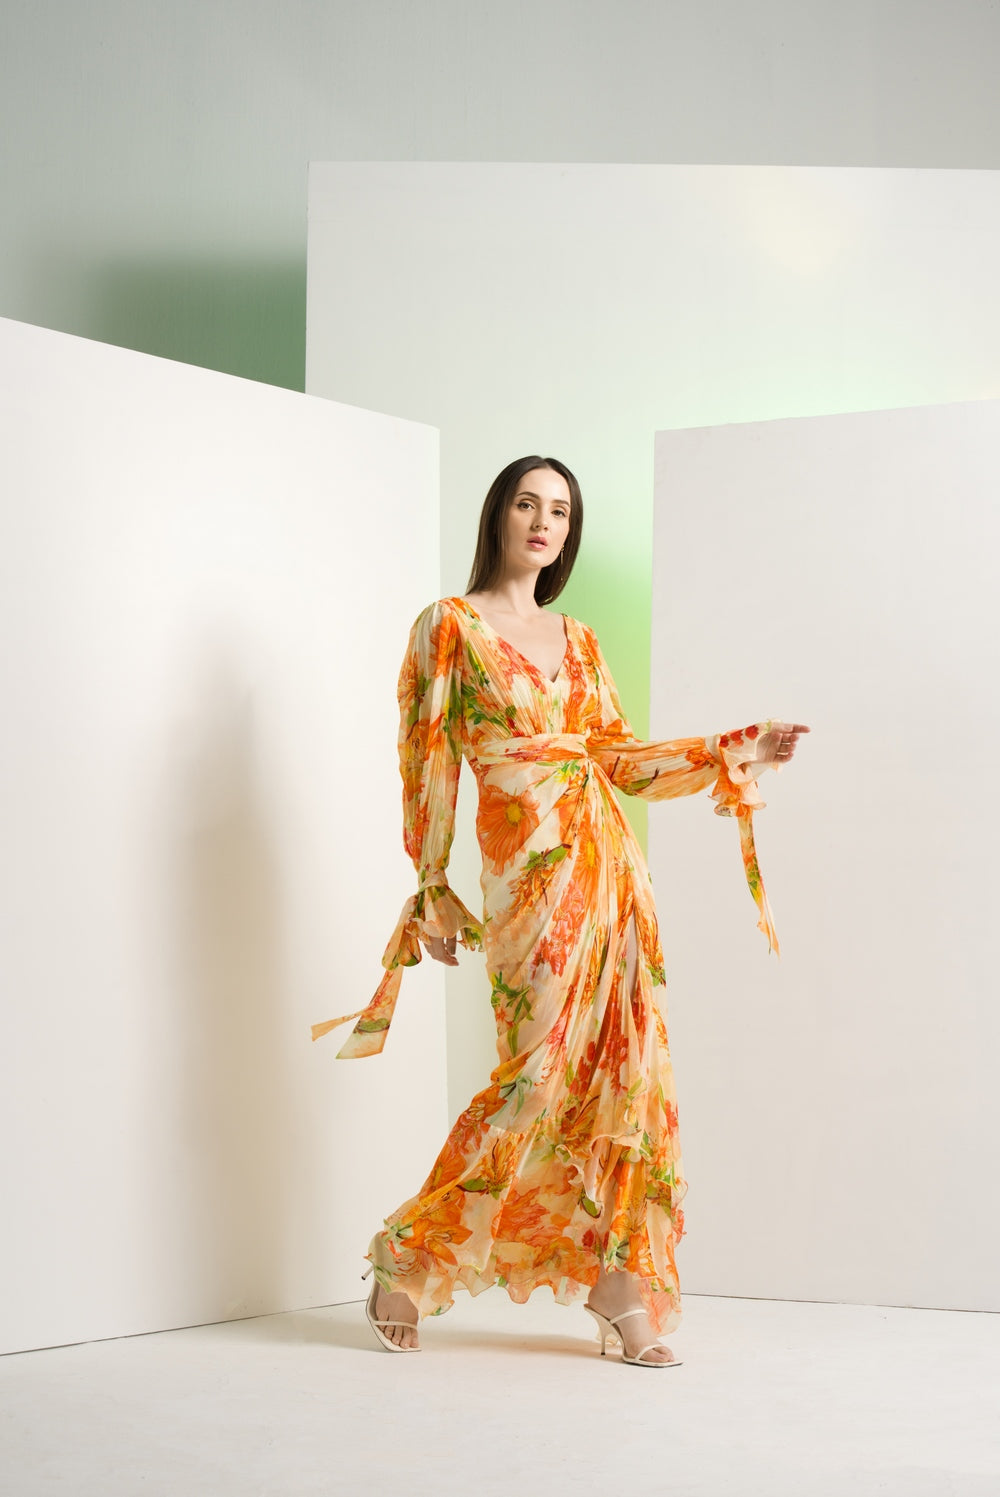 Orange lilium chffon dress with waist buckle details